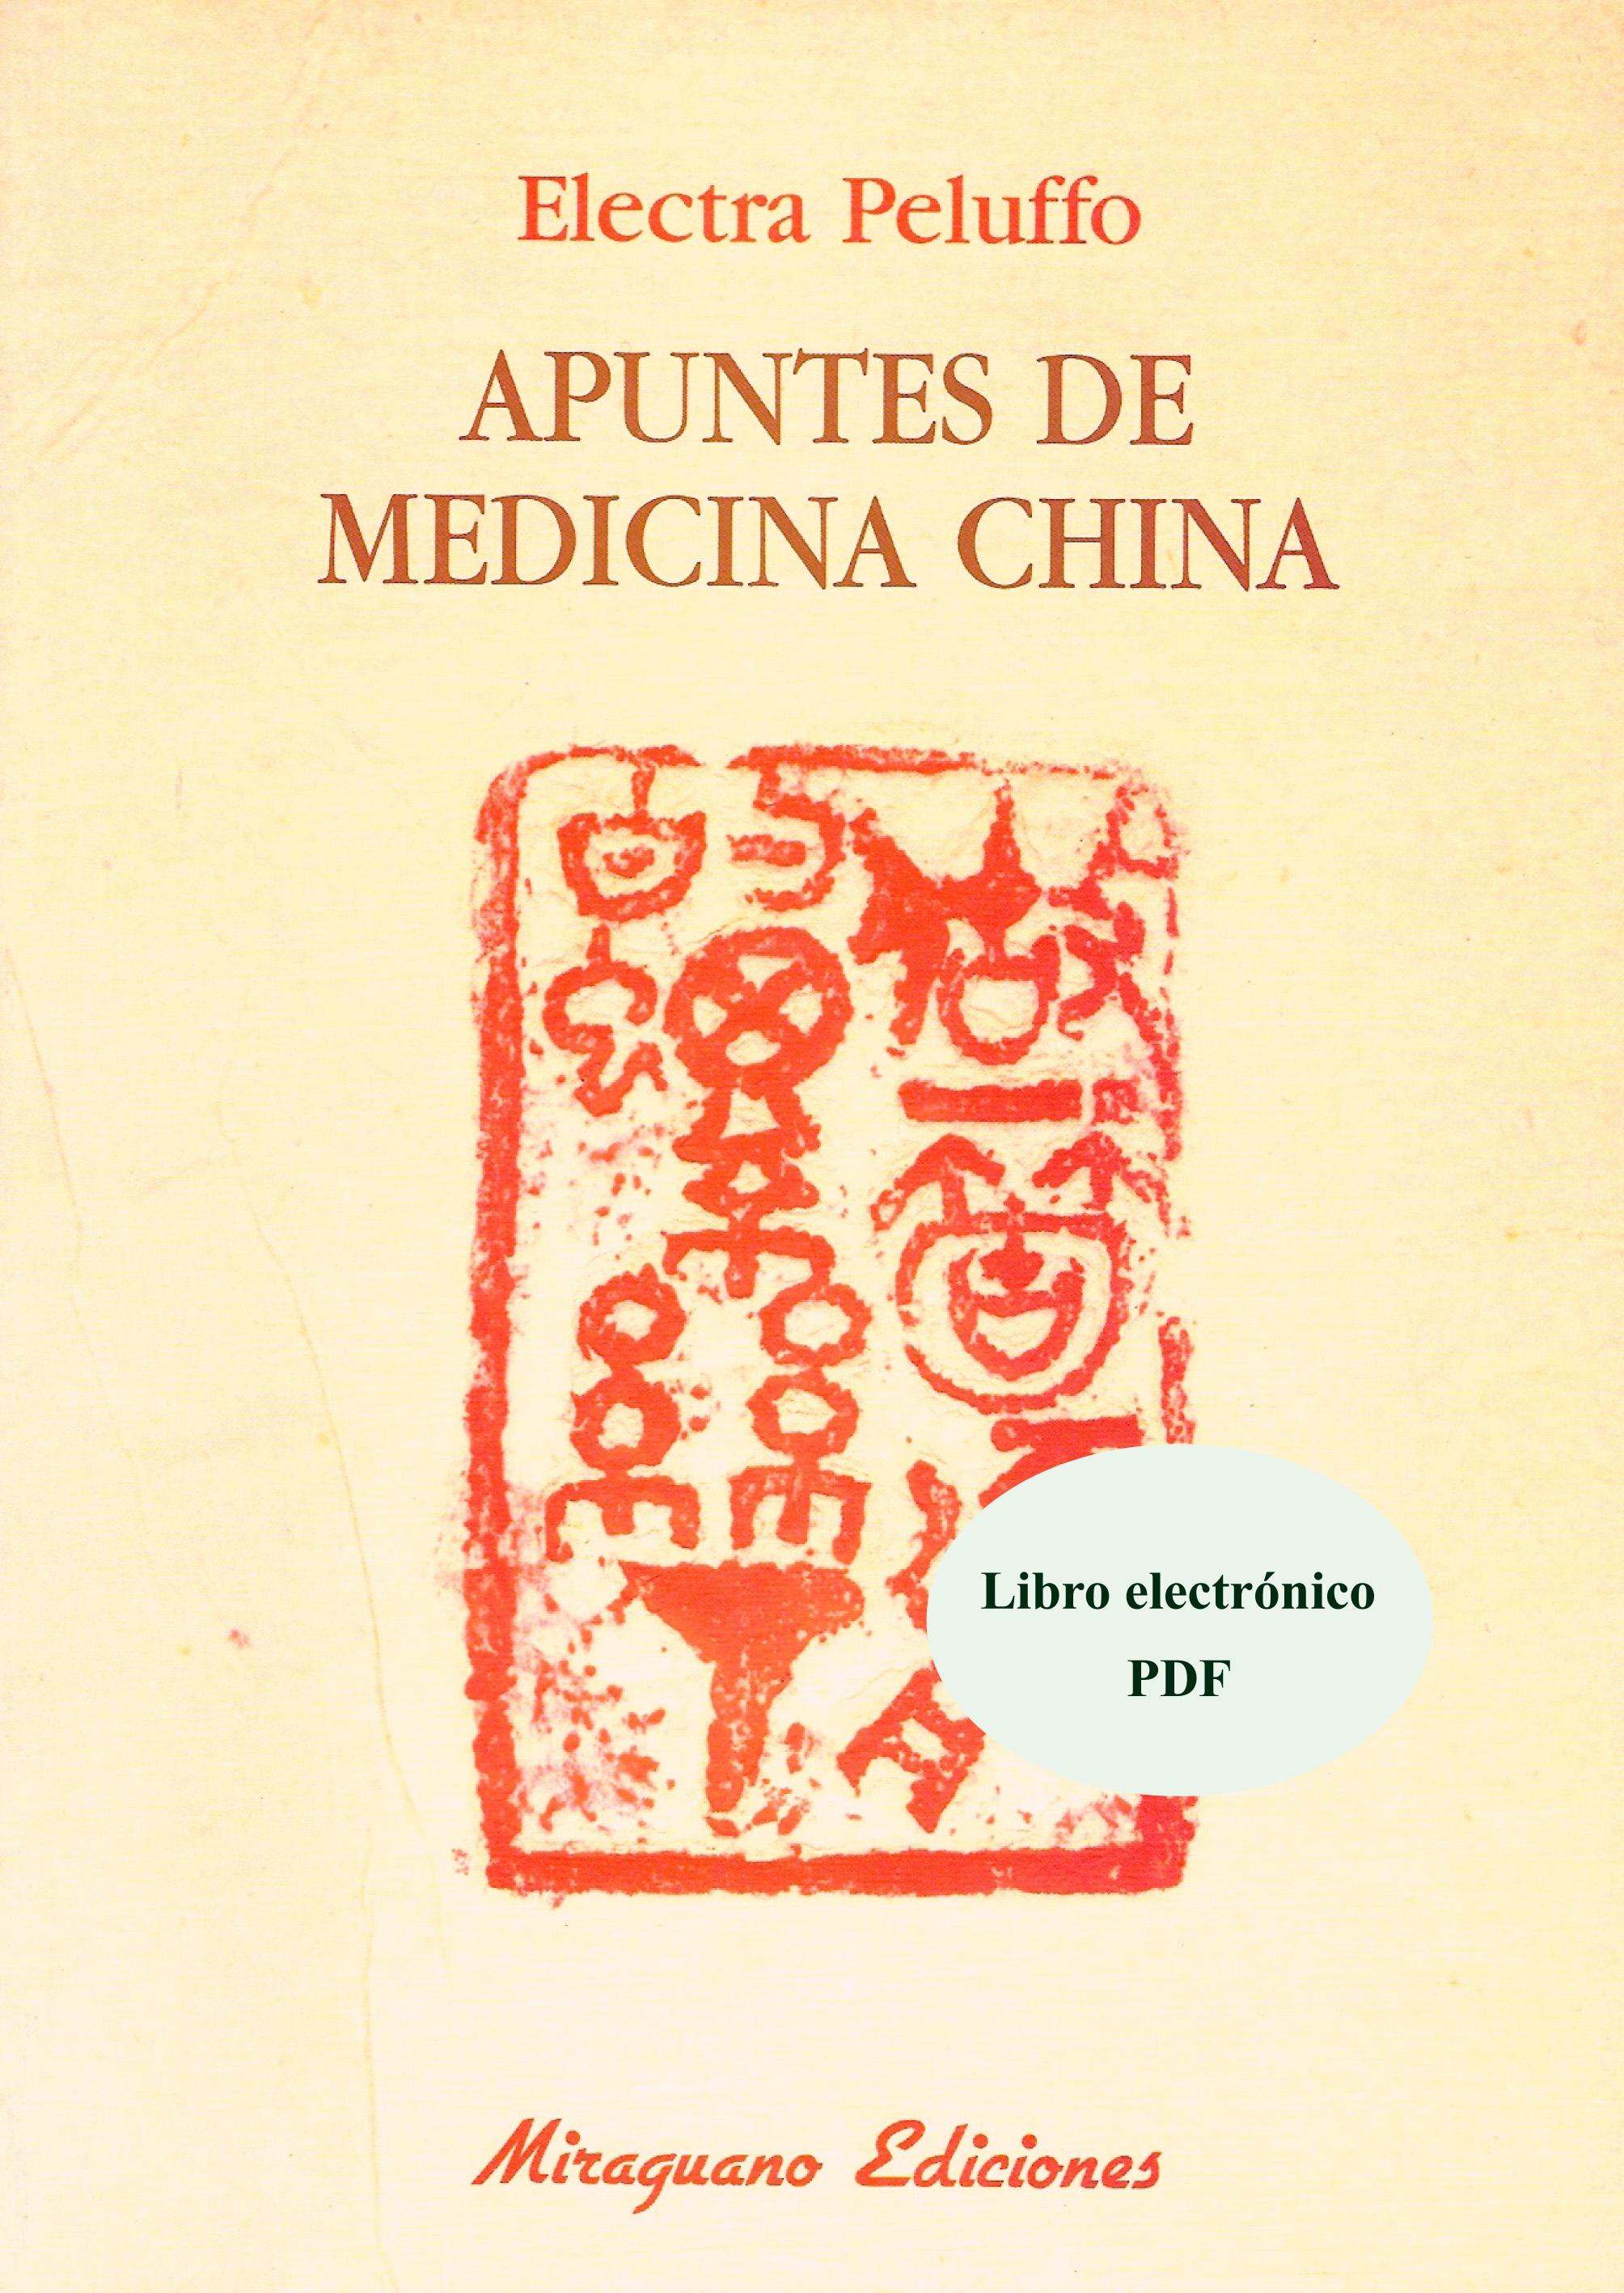 Apuntes de Medicina China "Libro Electrónico (PDF)"